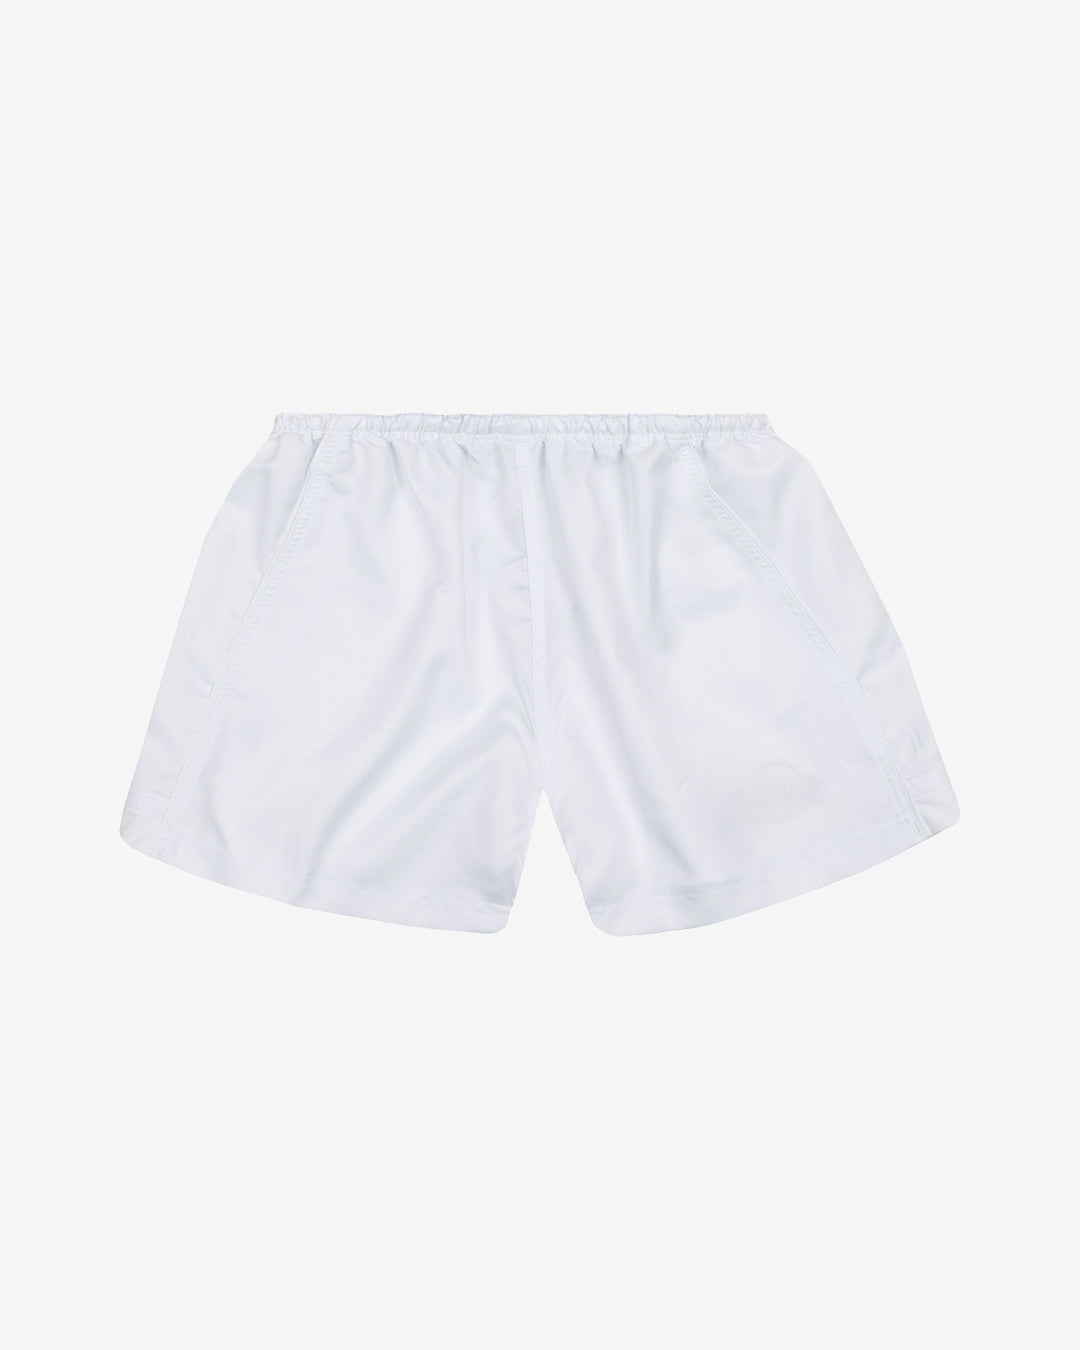 Hc: 9605 - Premier Shorts - White